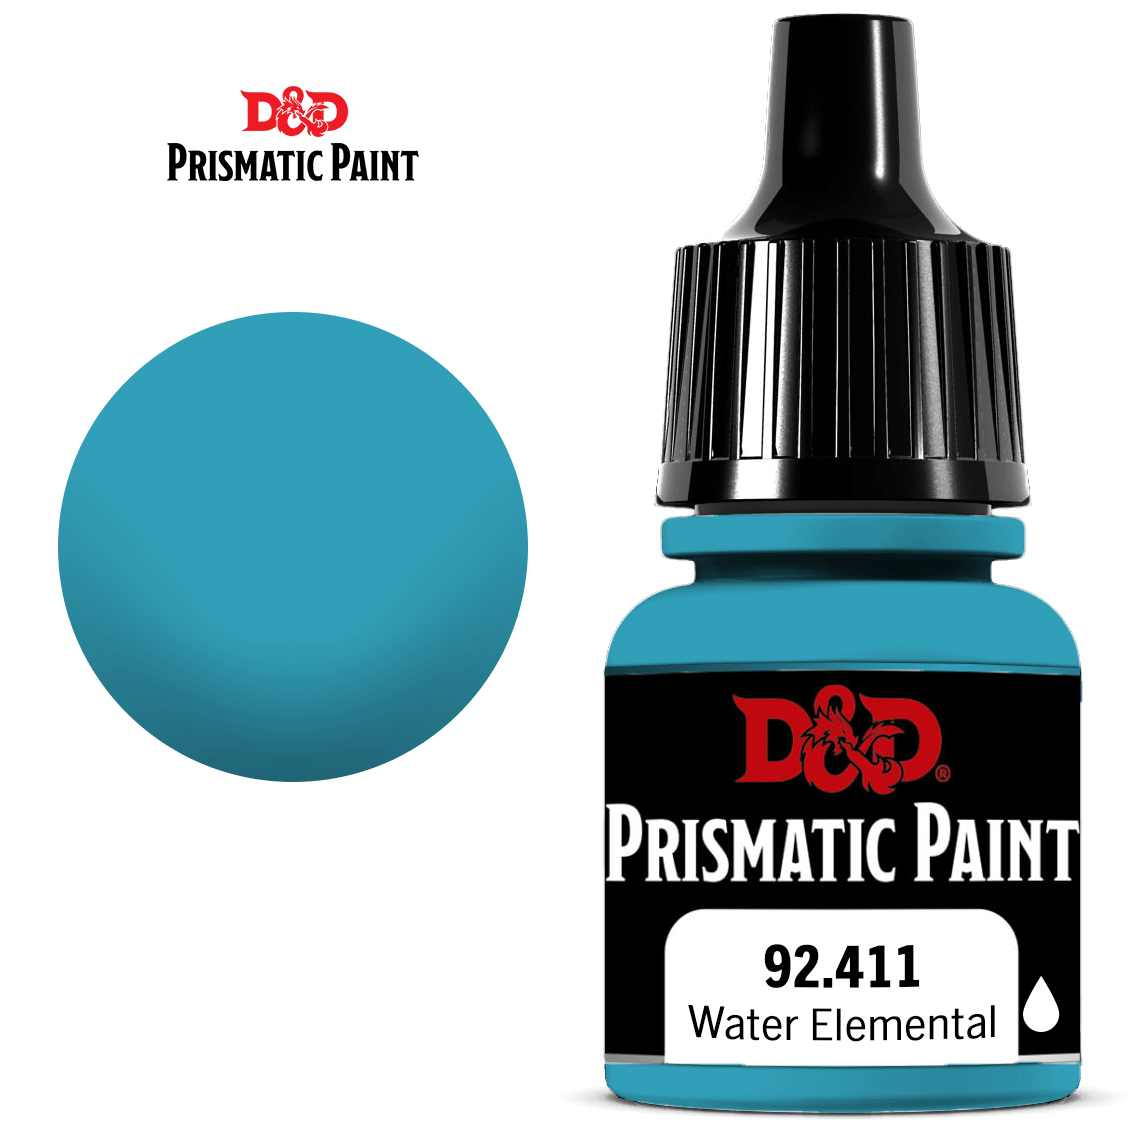 D&D Prismatic Paint: Water Elemental